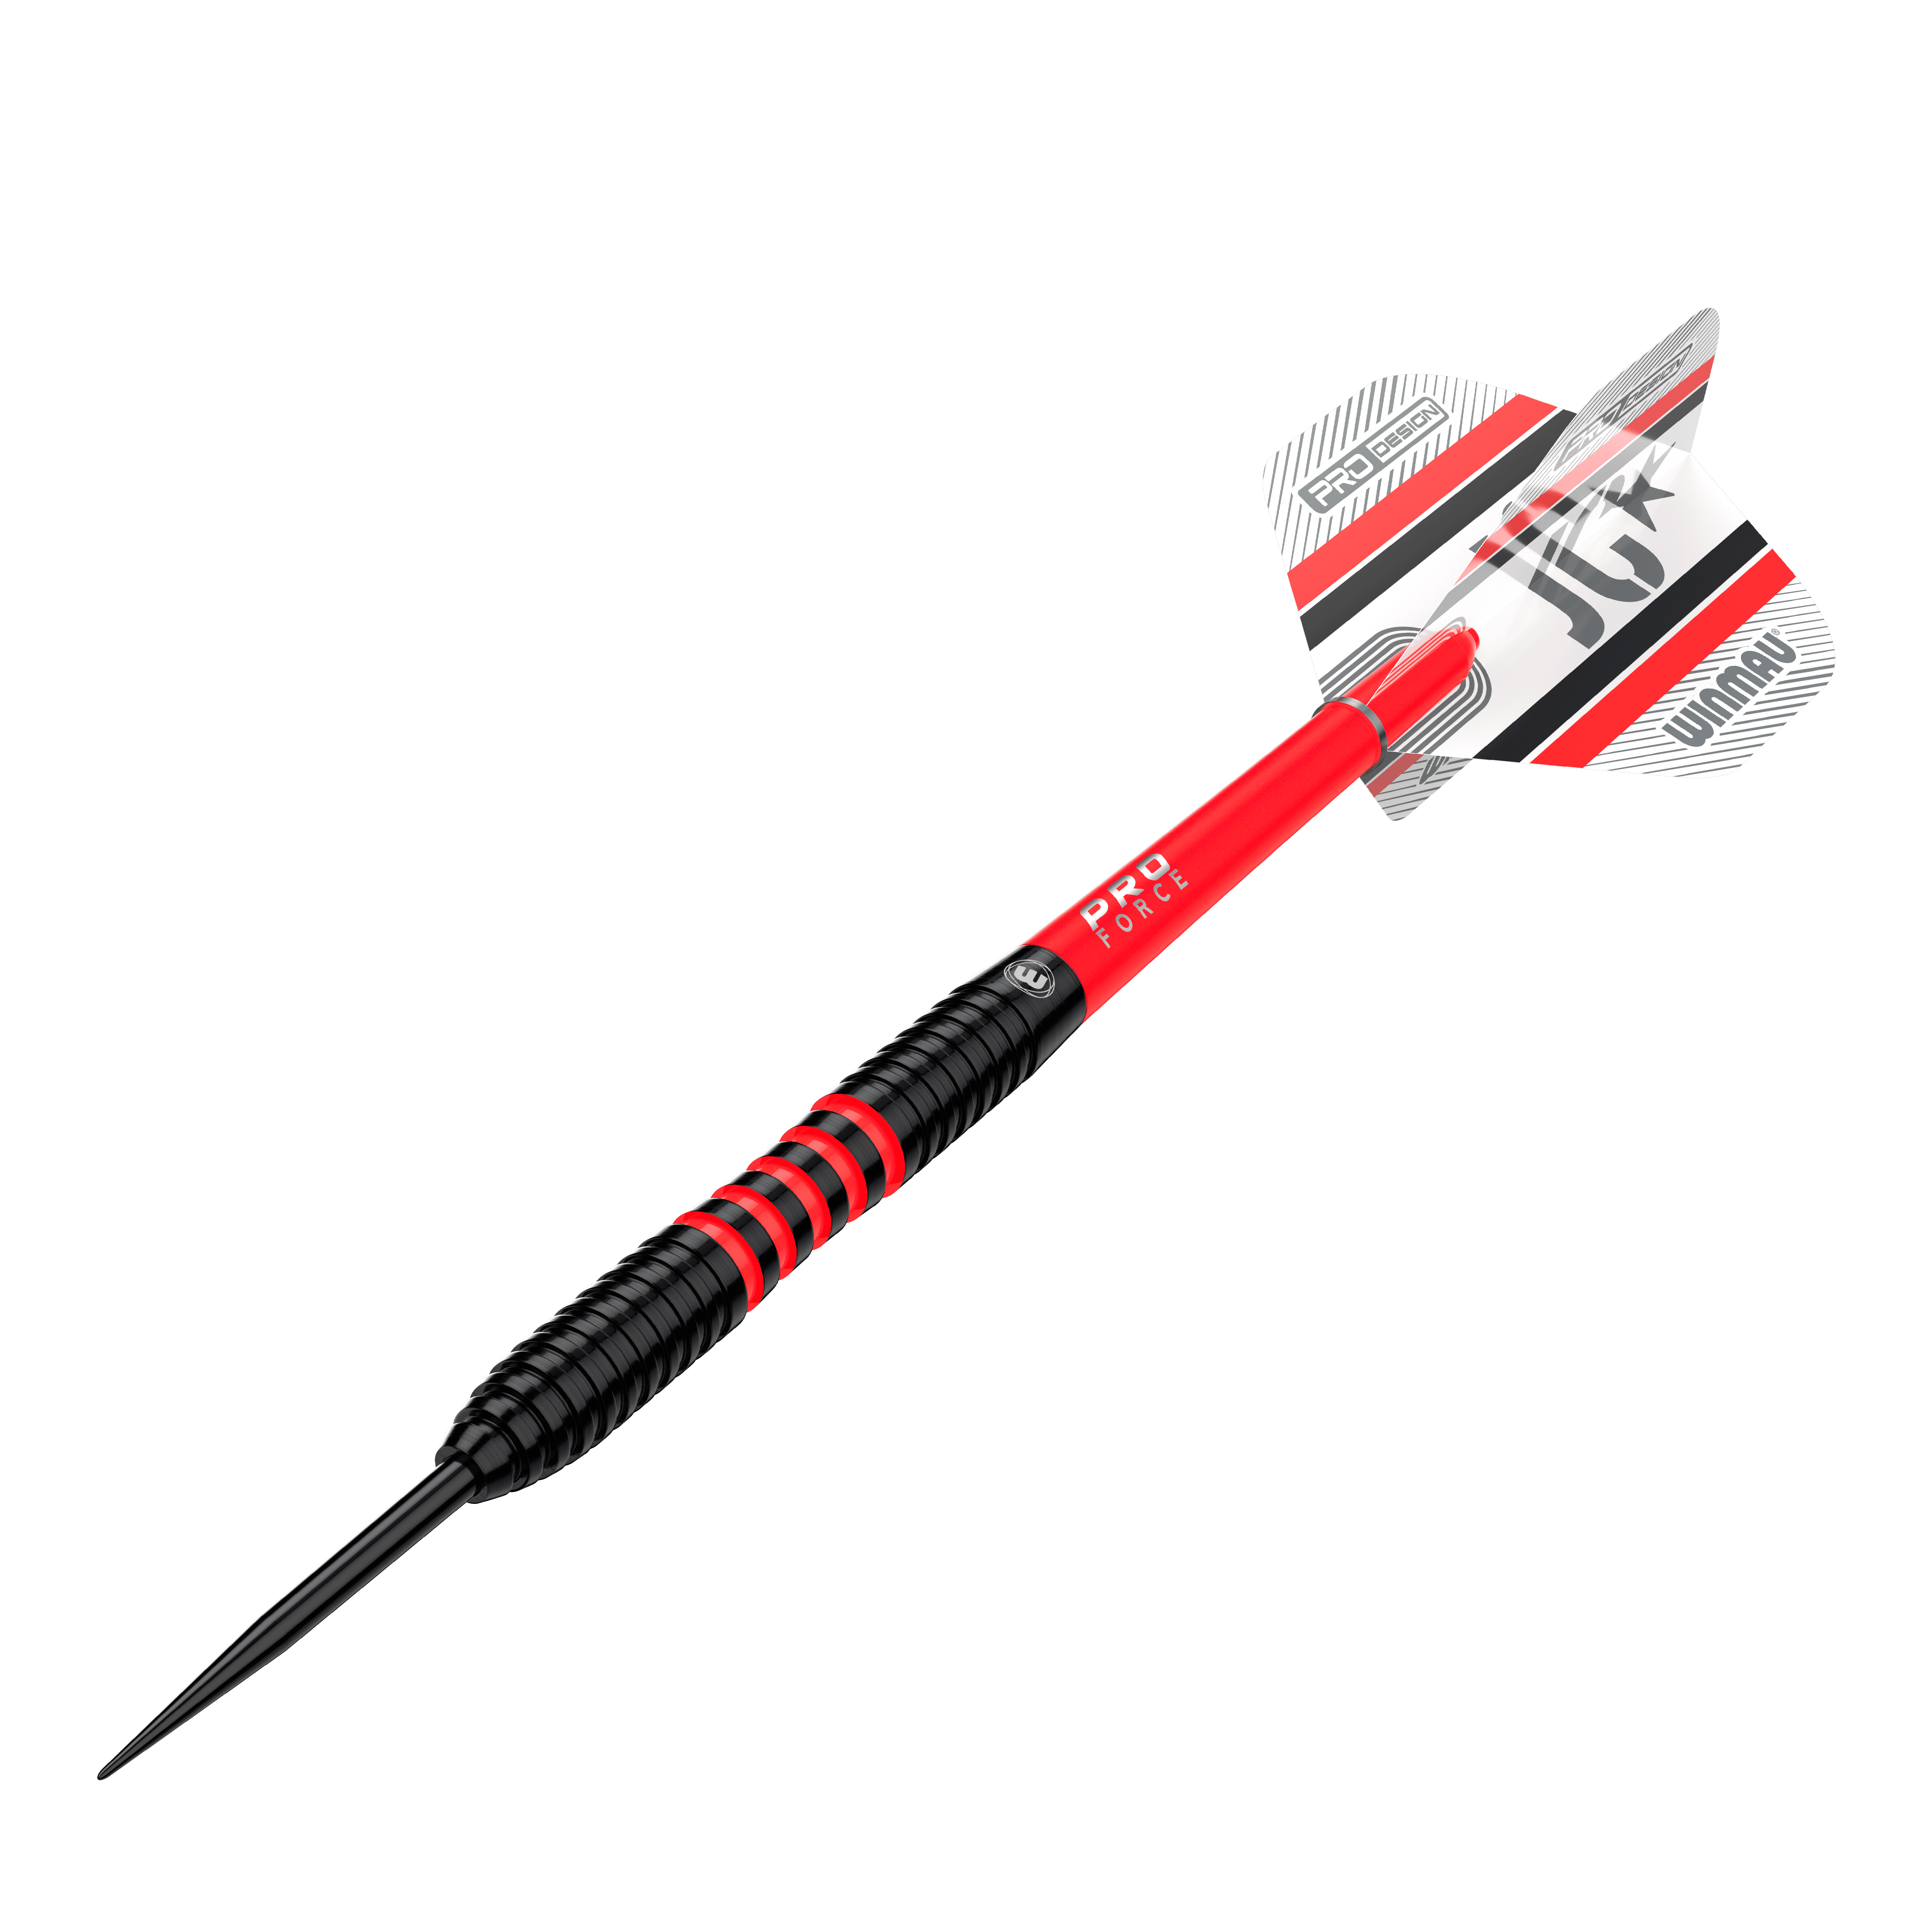 Winmau Joe Cullen 85 Pro-Series steel darts